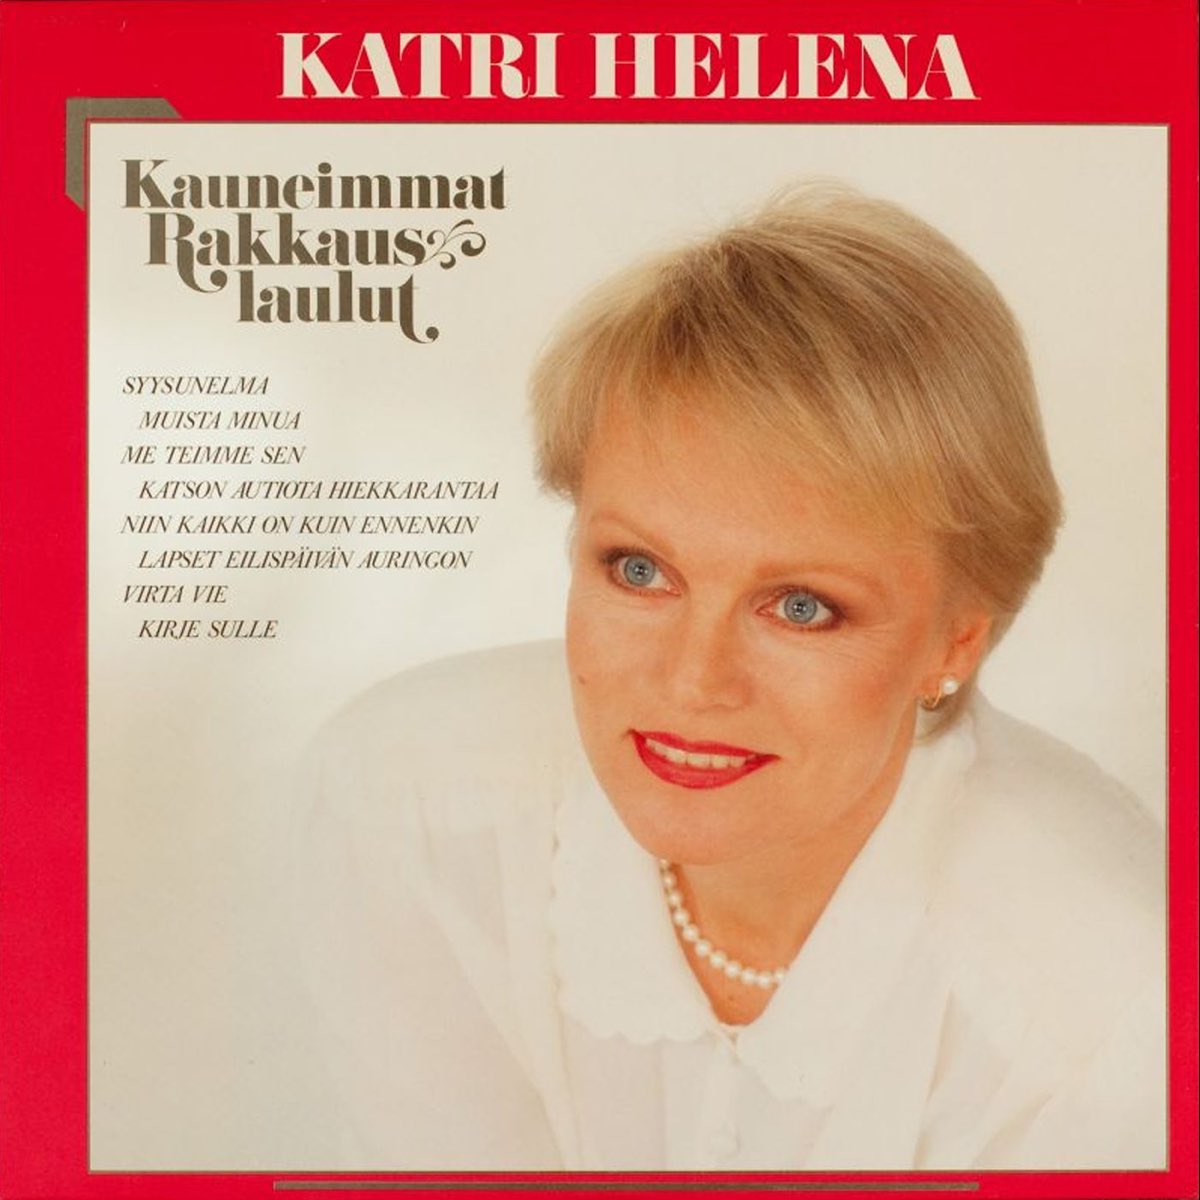 Kauneimmat rakkauslaulut - Deluxe by Katri Helena on Apple Music